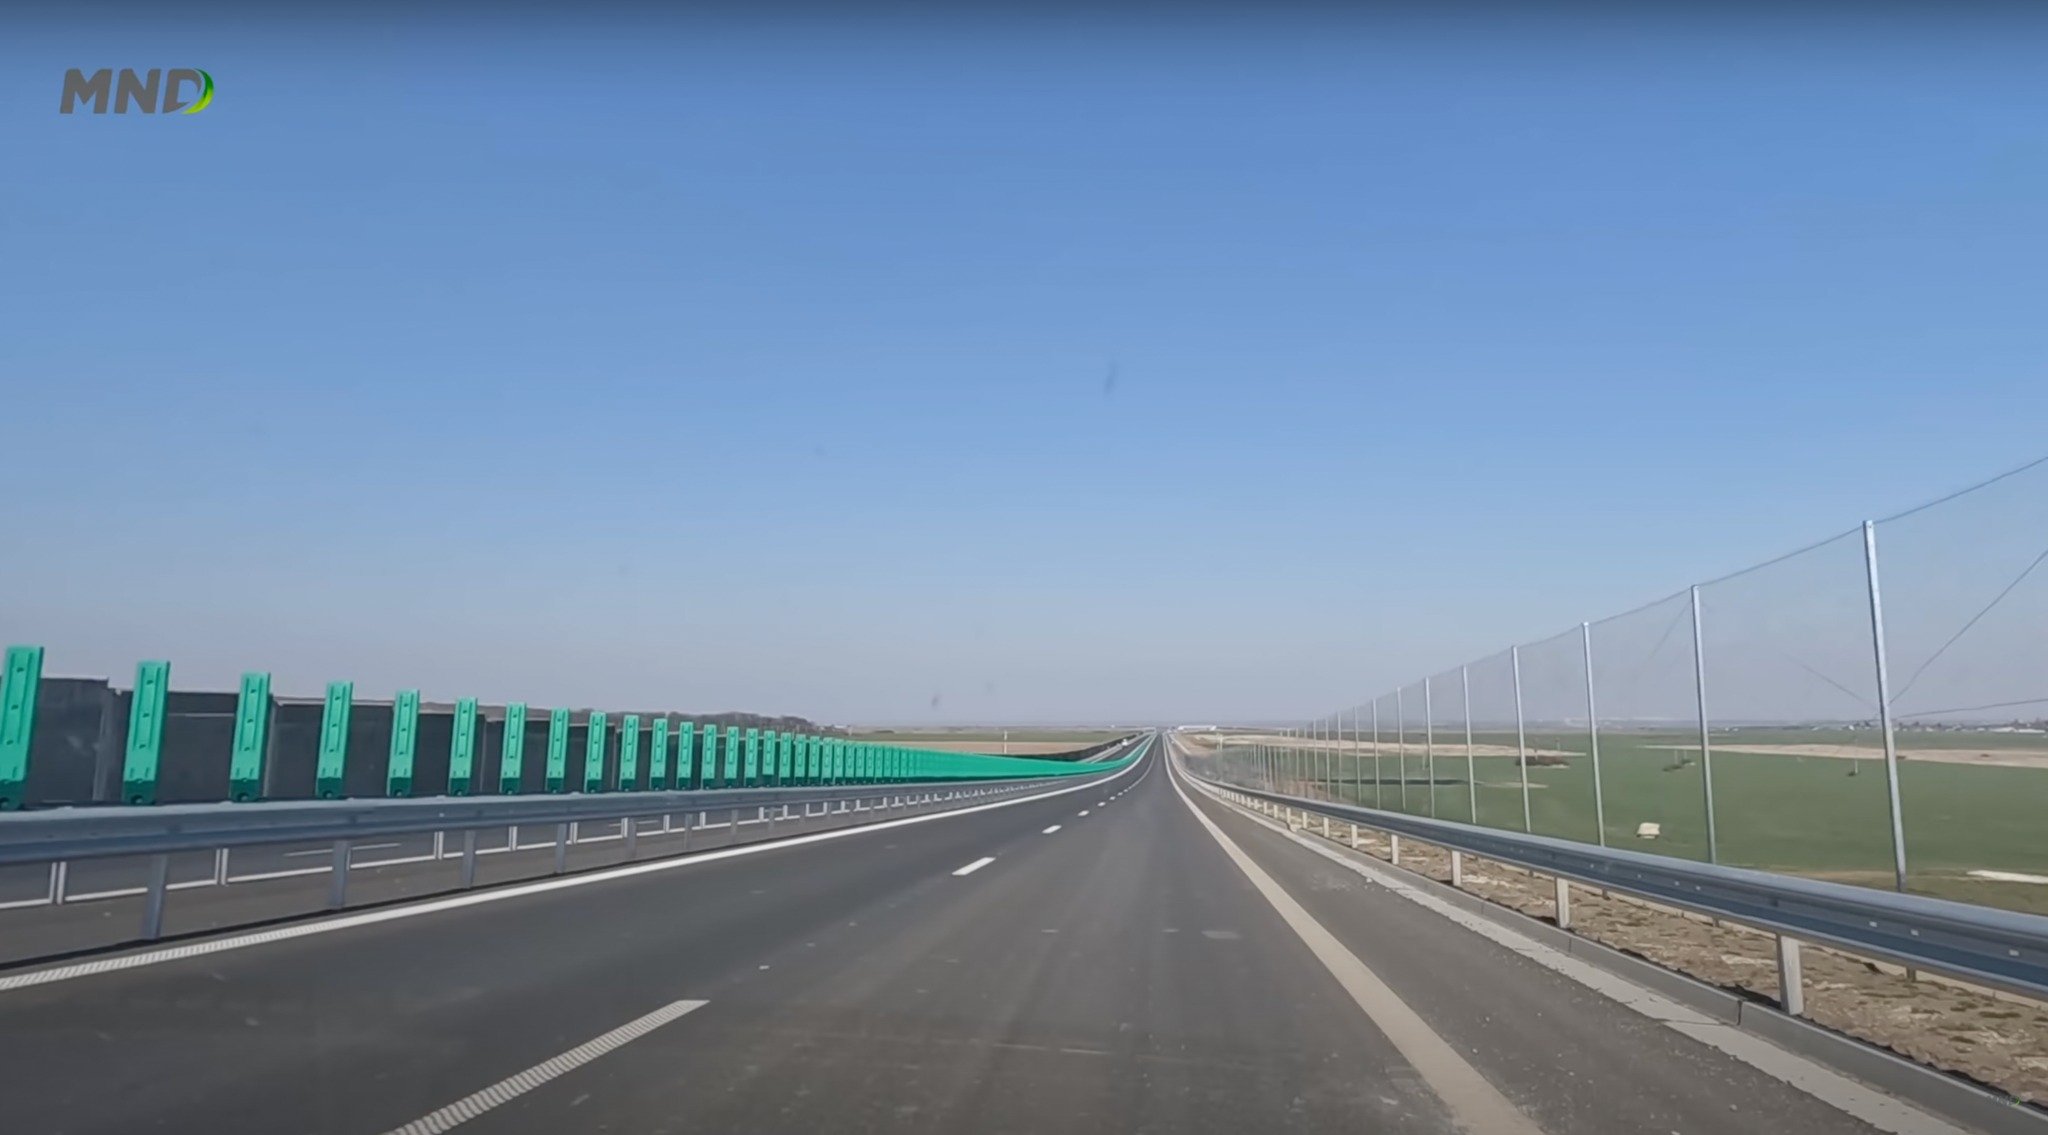  Crește viteză maximă admisă pe drumurile expres din România